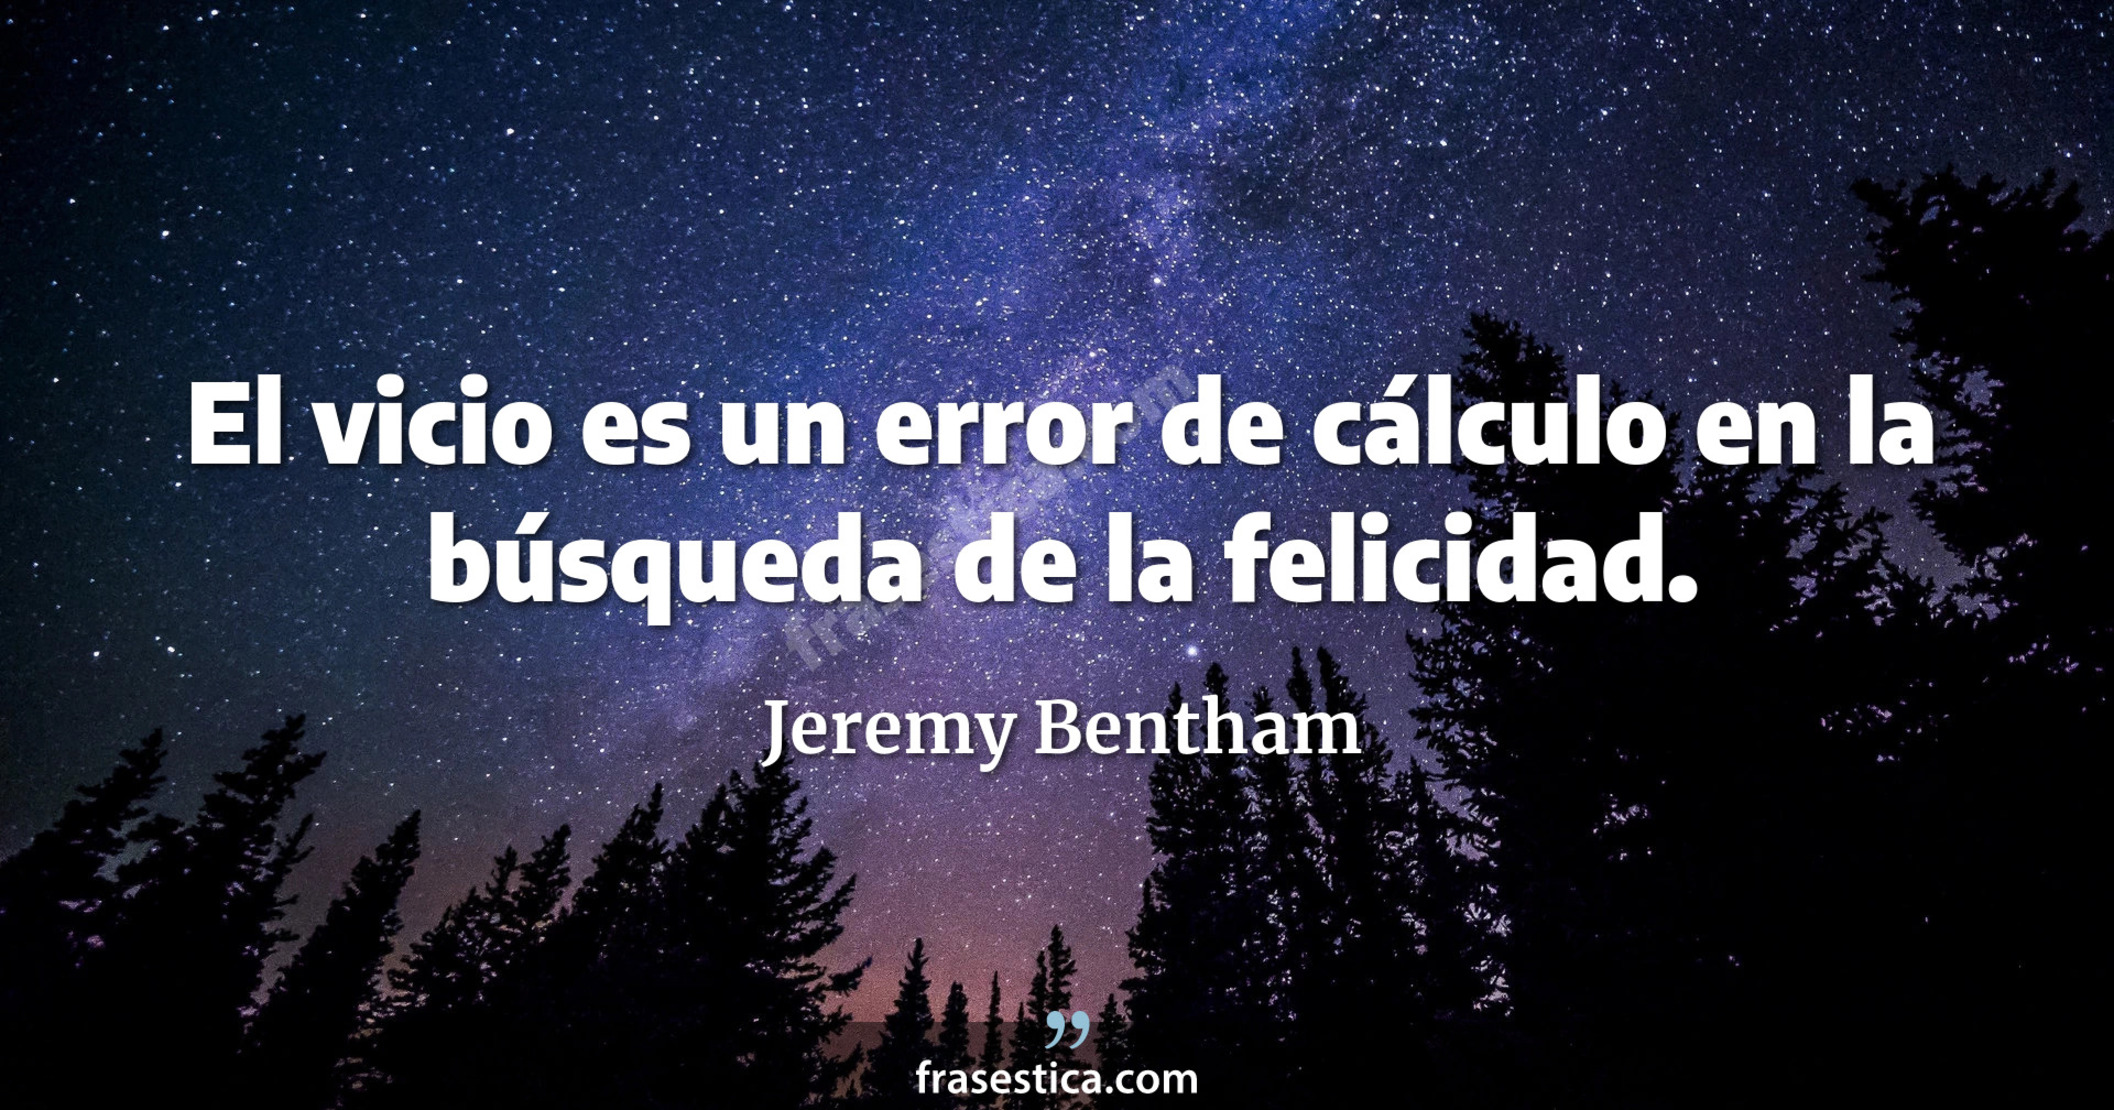 El vicio es un error de cálculo en la búsqueda de la felicidad. - Jeremy Bentham